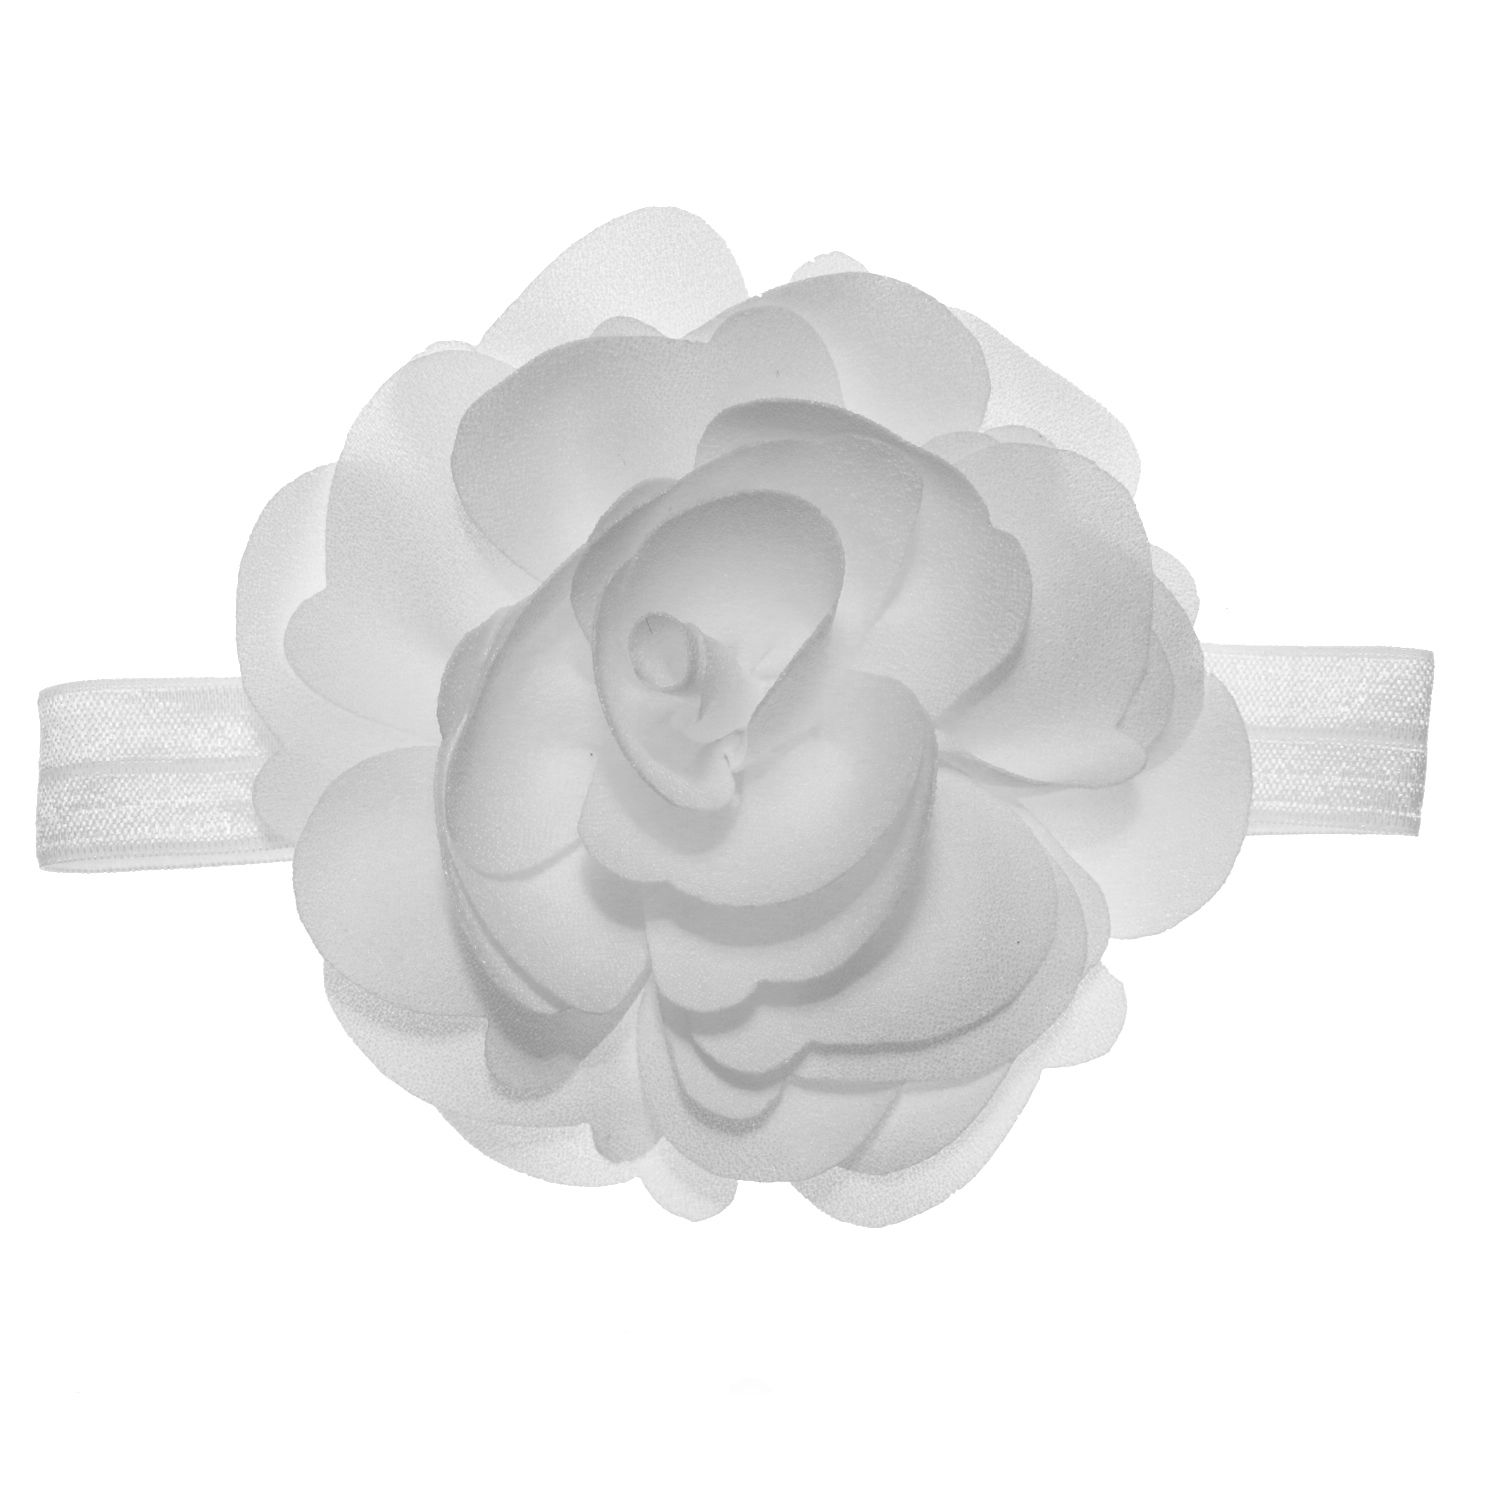 هدبند نوزادی سارینا گل مدل نیکا رنگ سفید -  - 1